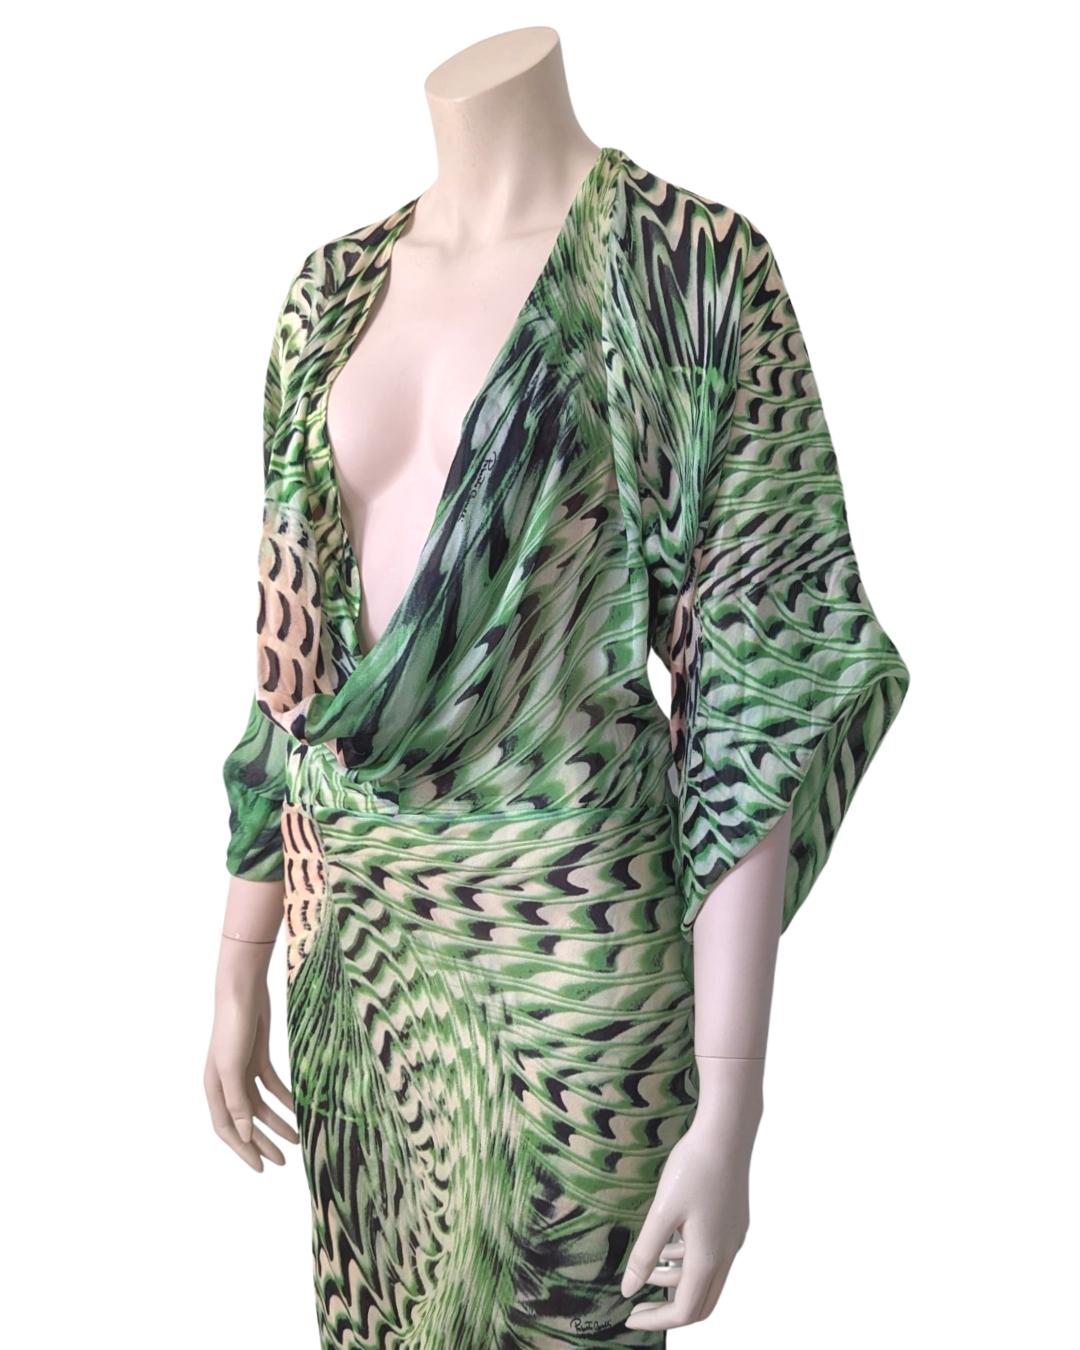 Women's Roberto Cavalli S/S 2001 Runway Silk Dress For Sale